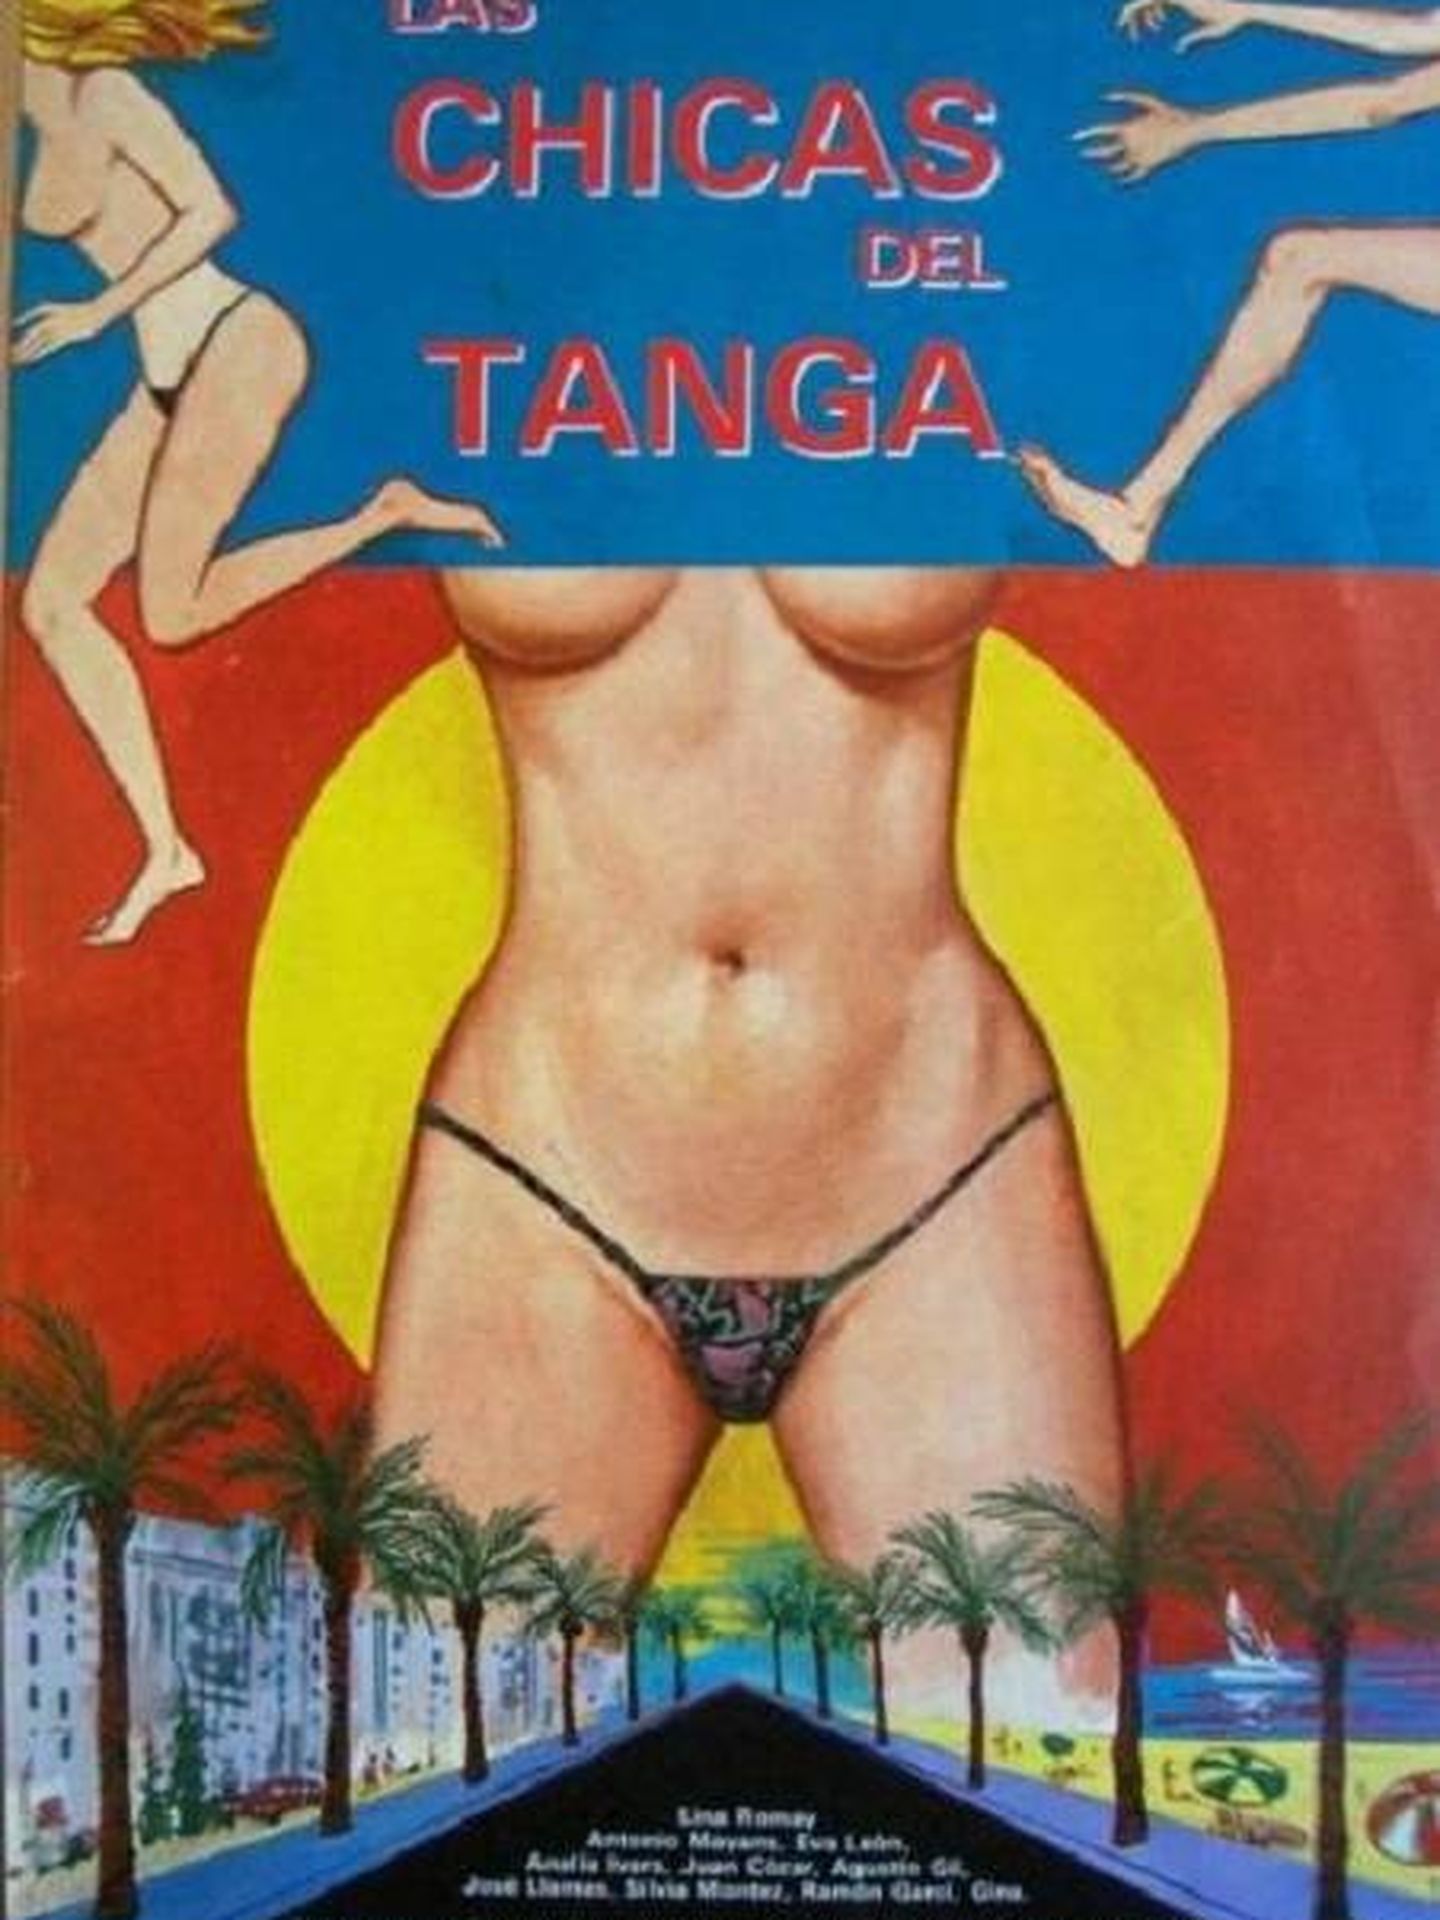 Cartel de 'Las chicas del tanga'.